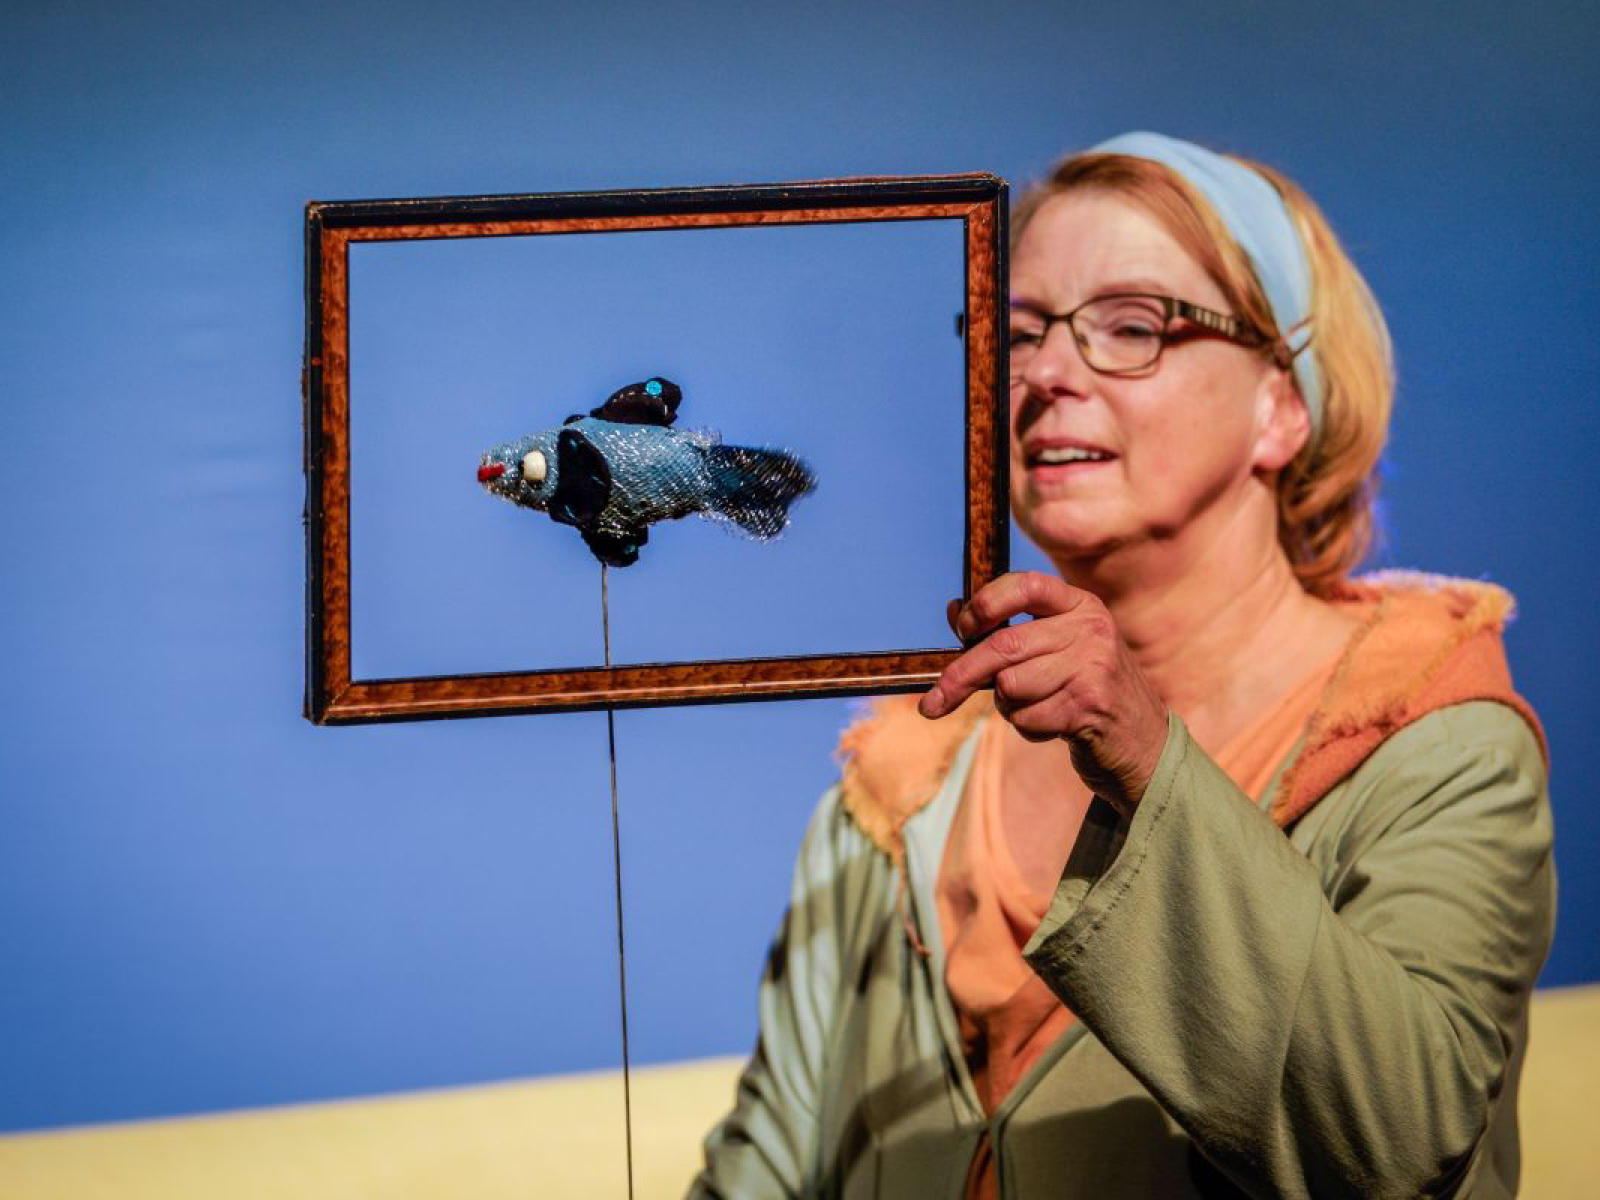 Puppenspielerin Susanne Olbrich hält die Puppe eines kleinen, blauen Fisches mit dunklen Flossen in einen Holzrahmen. Von vorne sieht es aus, als sei der Fisch ein gerahmtes Bild. Sie stehen vor einem blauem Hintergrund.